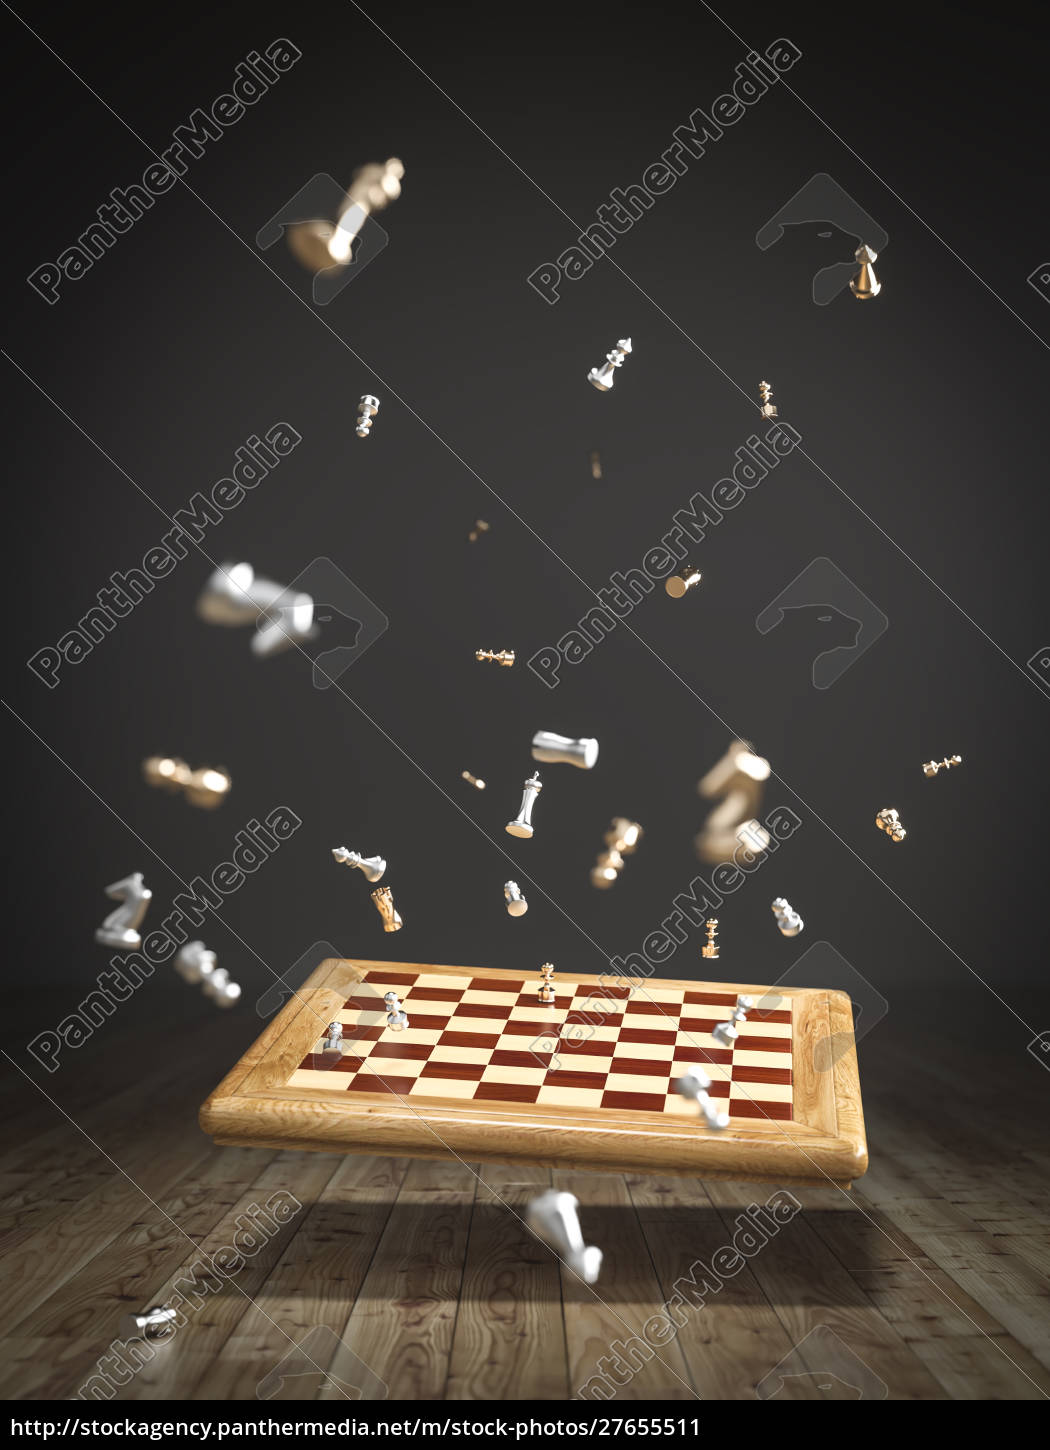 Tabuleiro de xadrez de renderização 3d com figuras